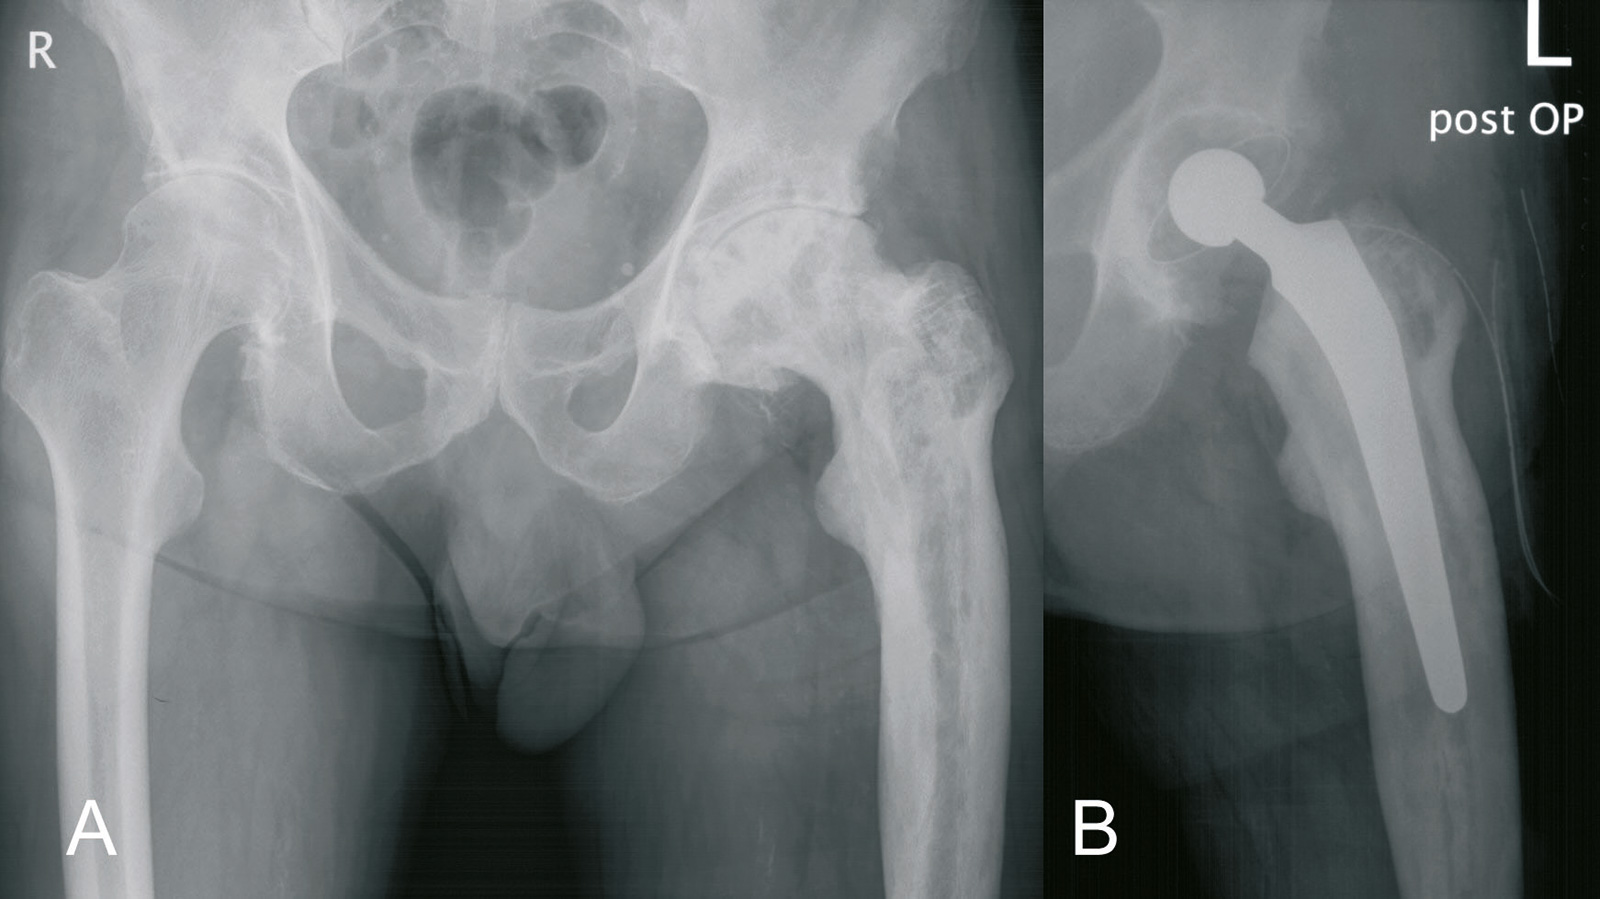 Abb. 8-36: Implantation einer Hüftprothese (B) bei sekundärer Arthrose auf der Basis eines M. Paget (A) (Eigentum des Insituts für Klinische Radiologie der Universität Münster)